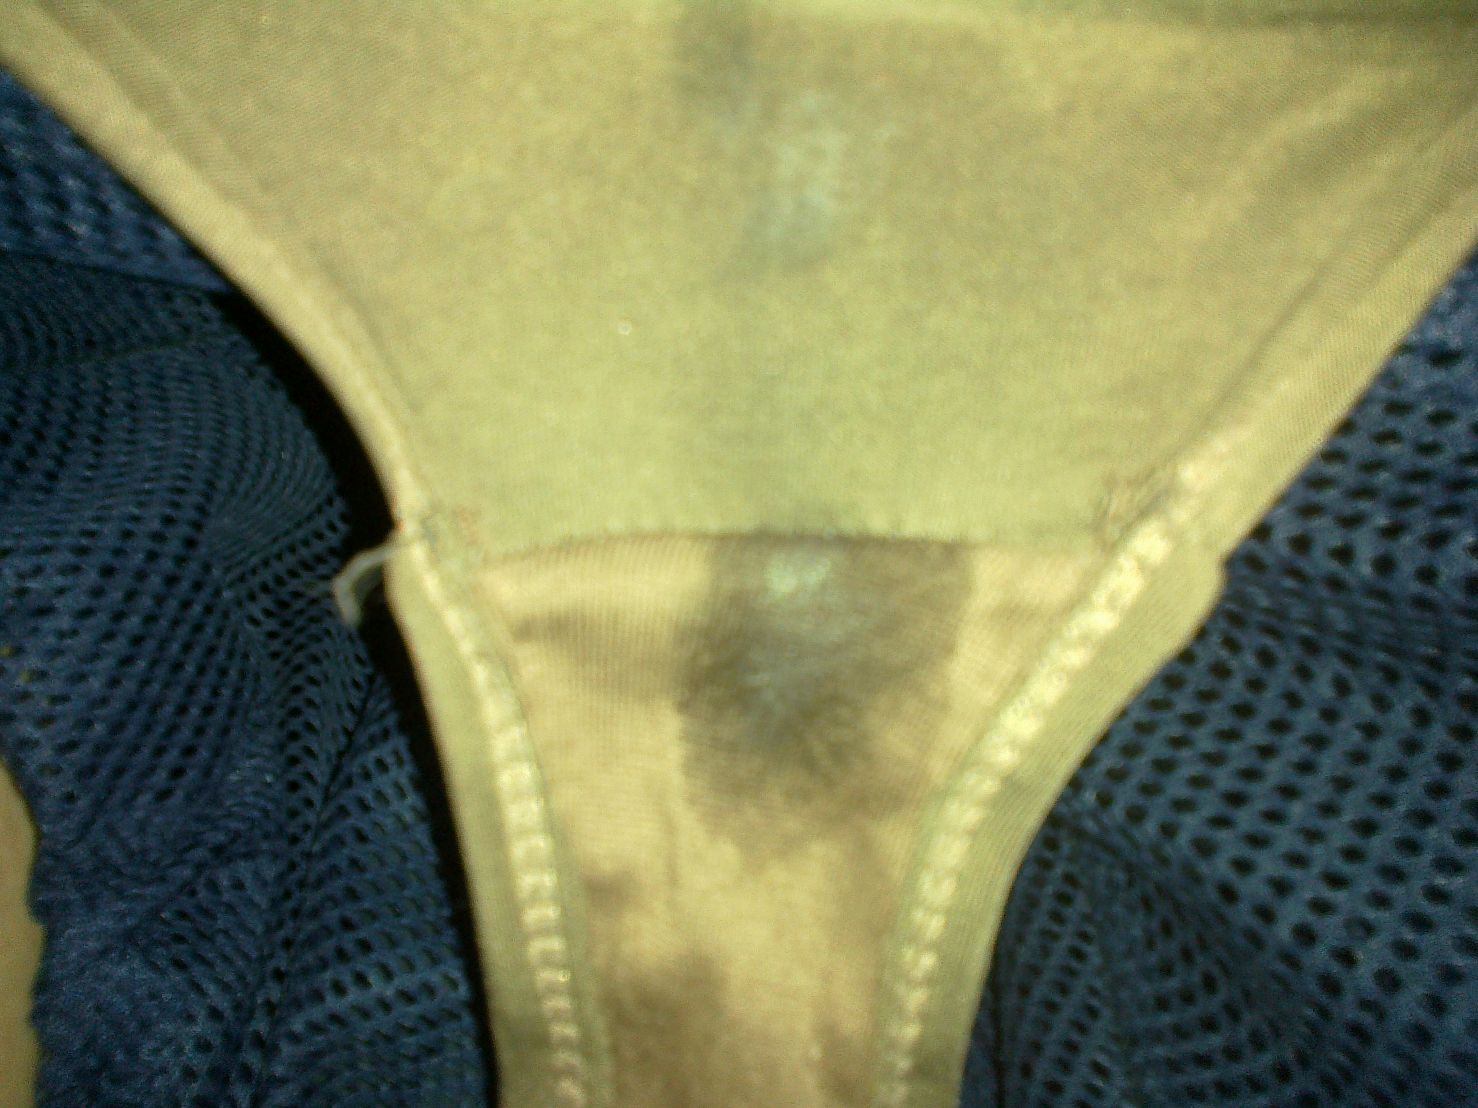 Wet spot inside my panty